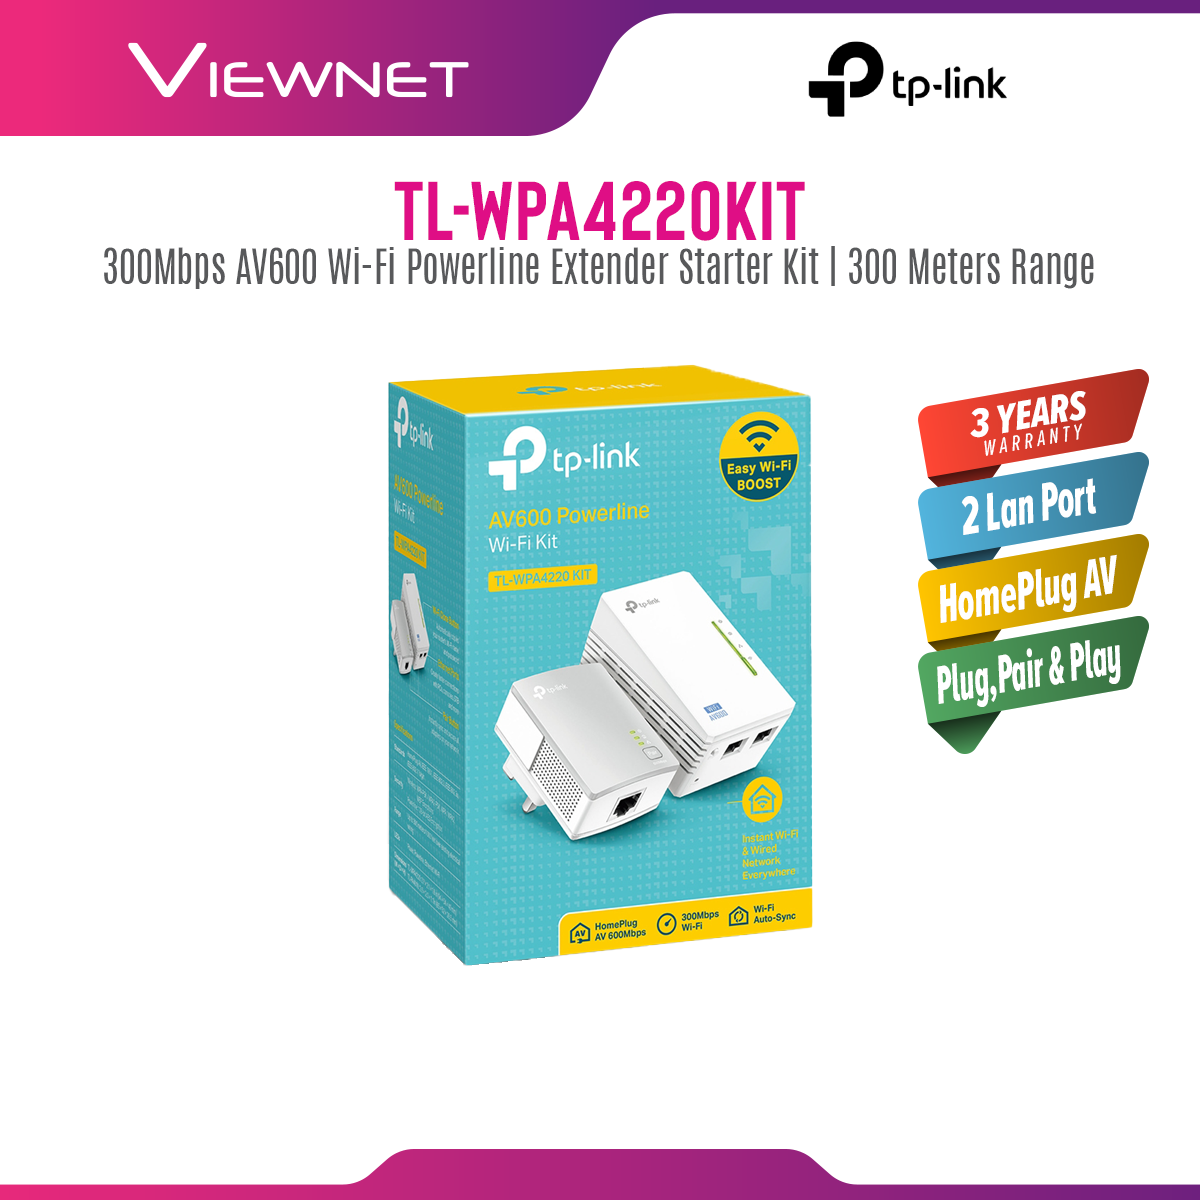 TP-LINK TL-WPA4220 KIT Onemesh AV600 300Mbps Powerline WIFI Wireless Adapter TL-WPA4220 KIT